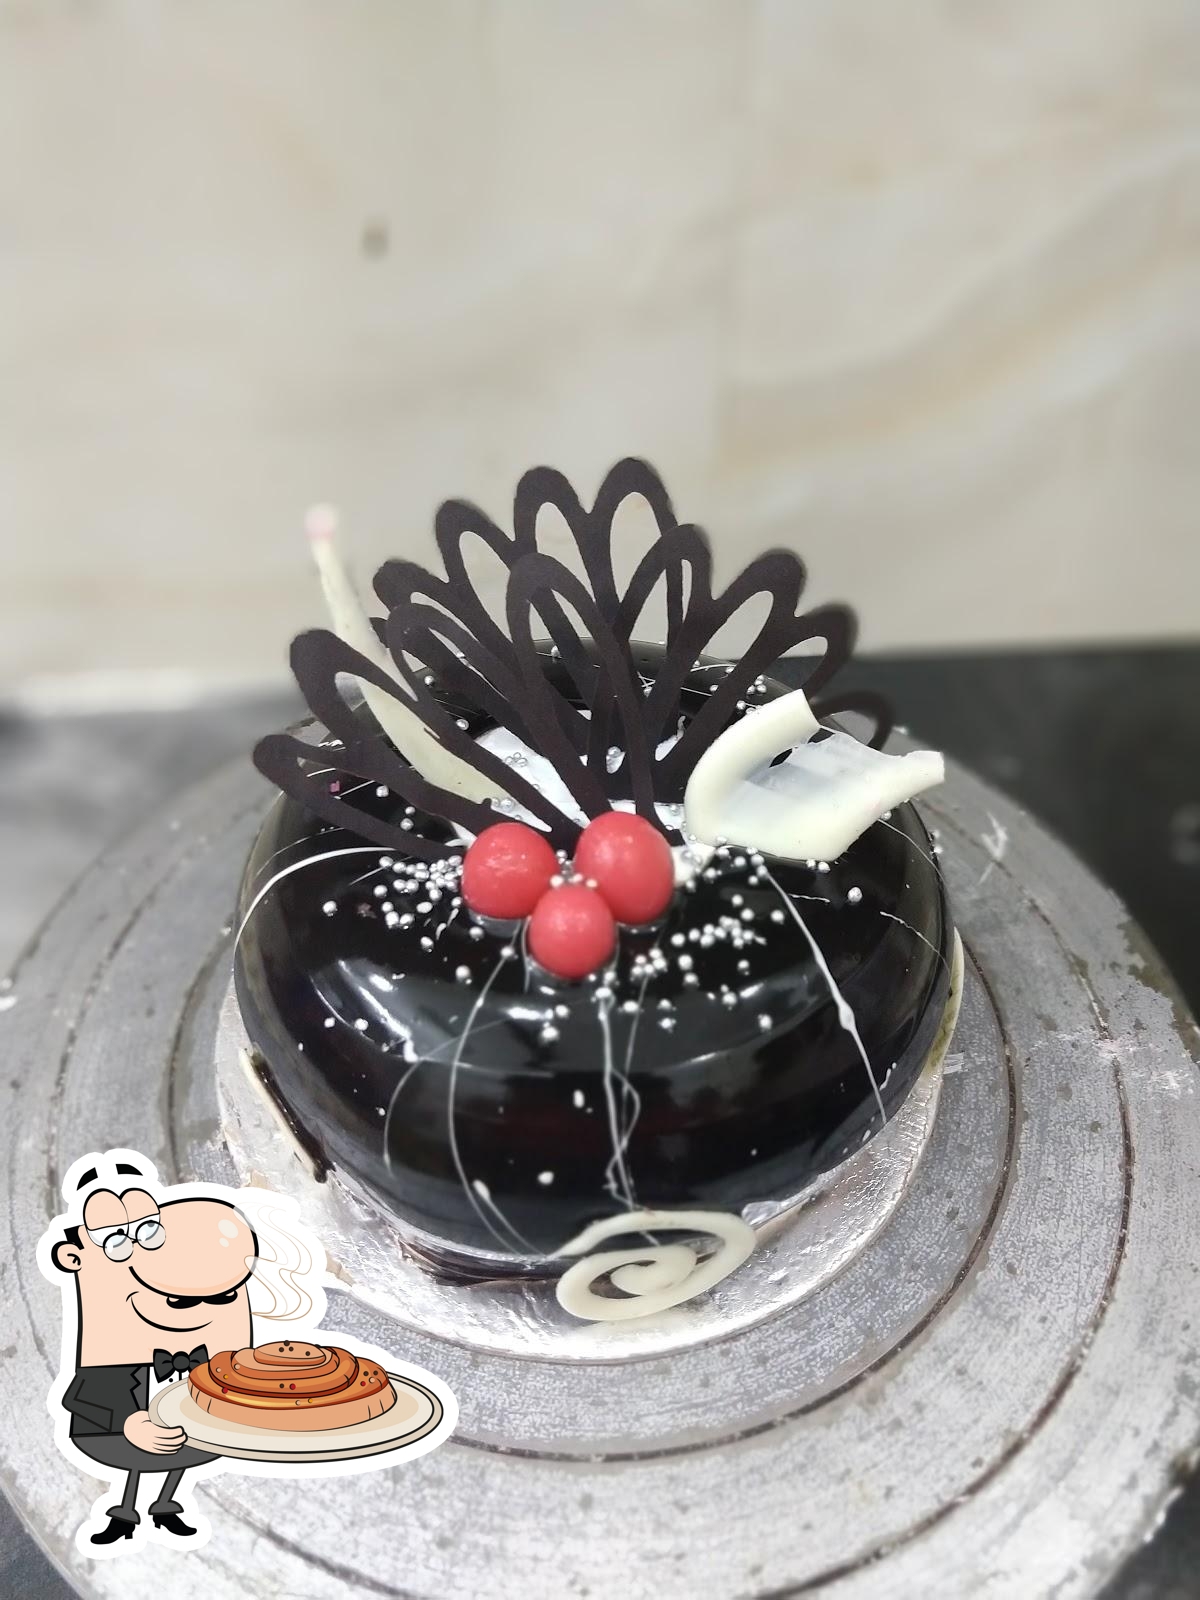 rb54 Red Velvet Sweet Bakes cake 2022 09 16